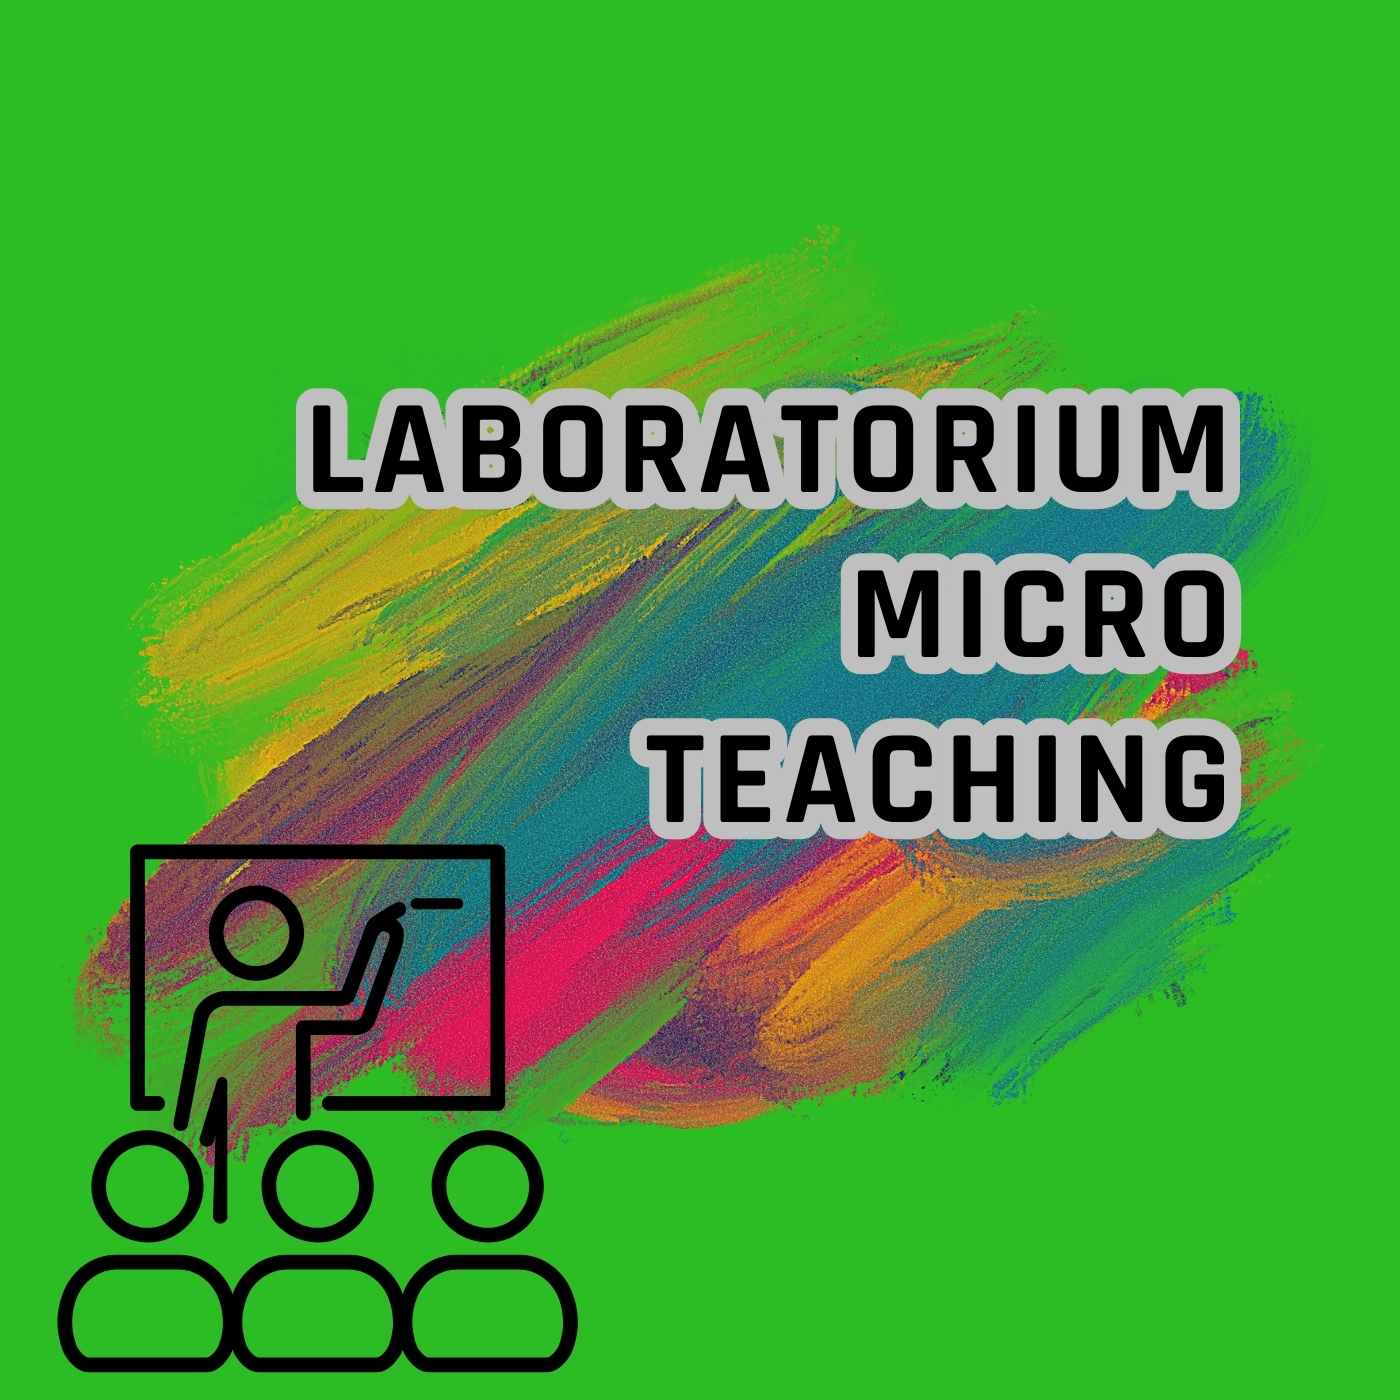 Laboratorium Micro Teaching